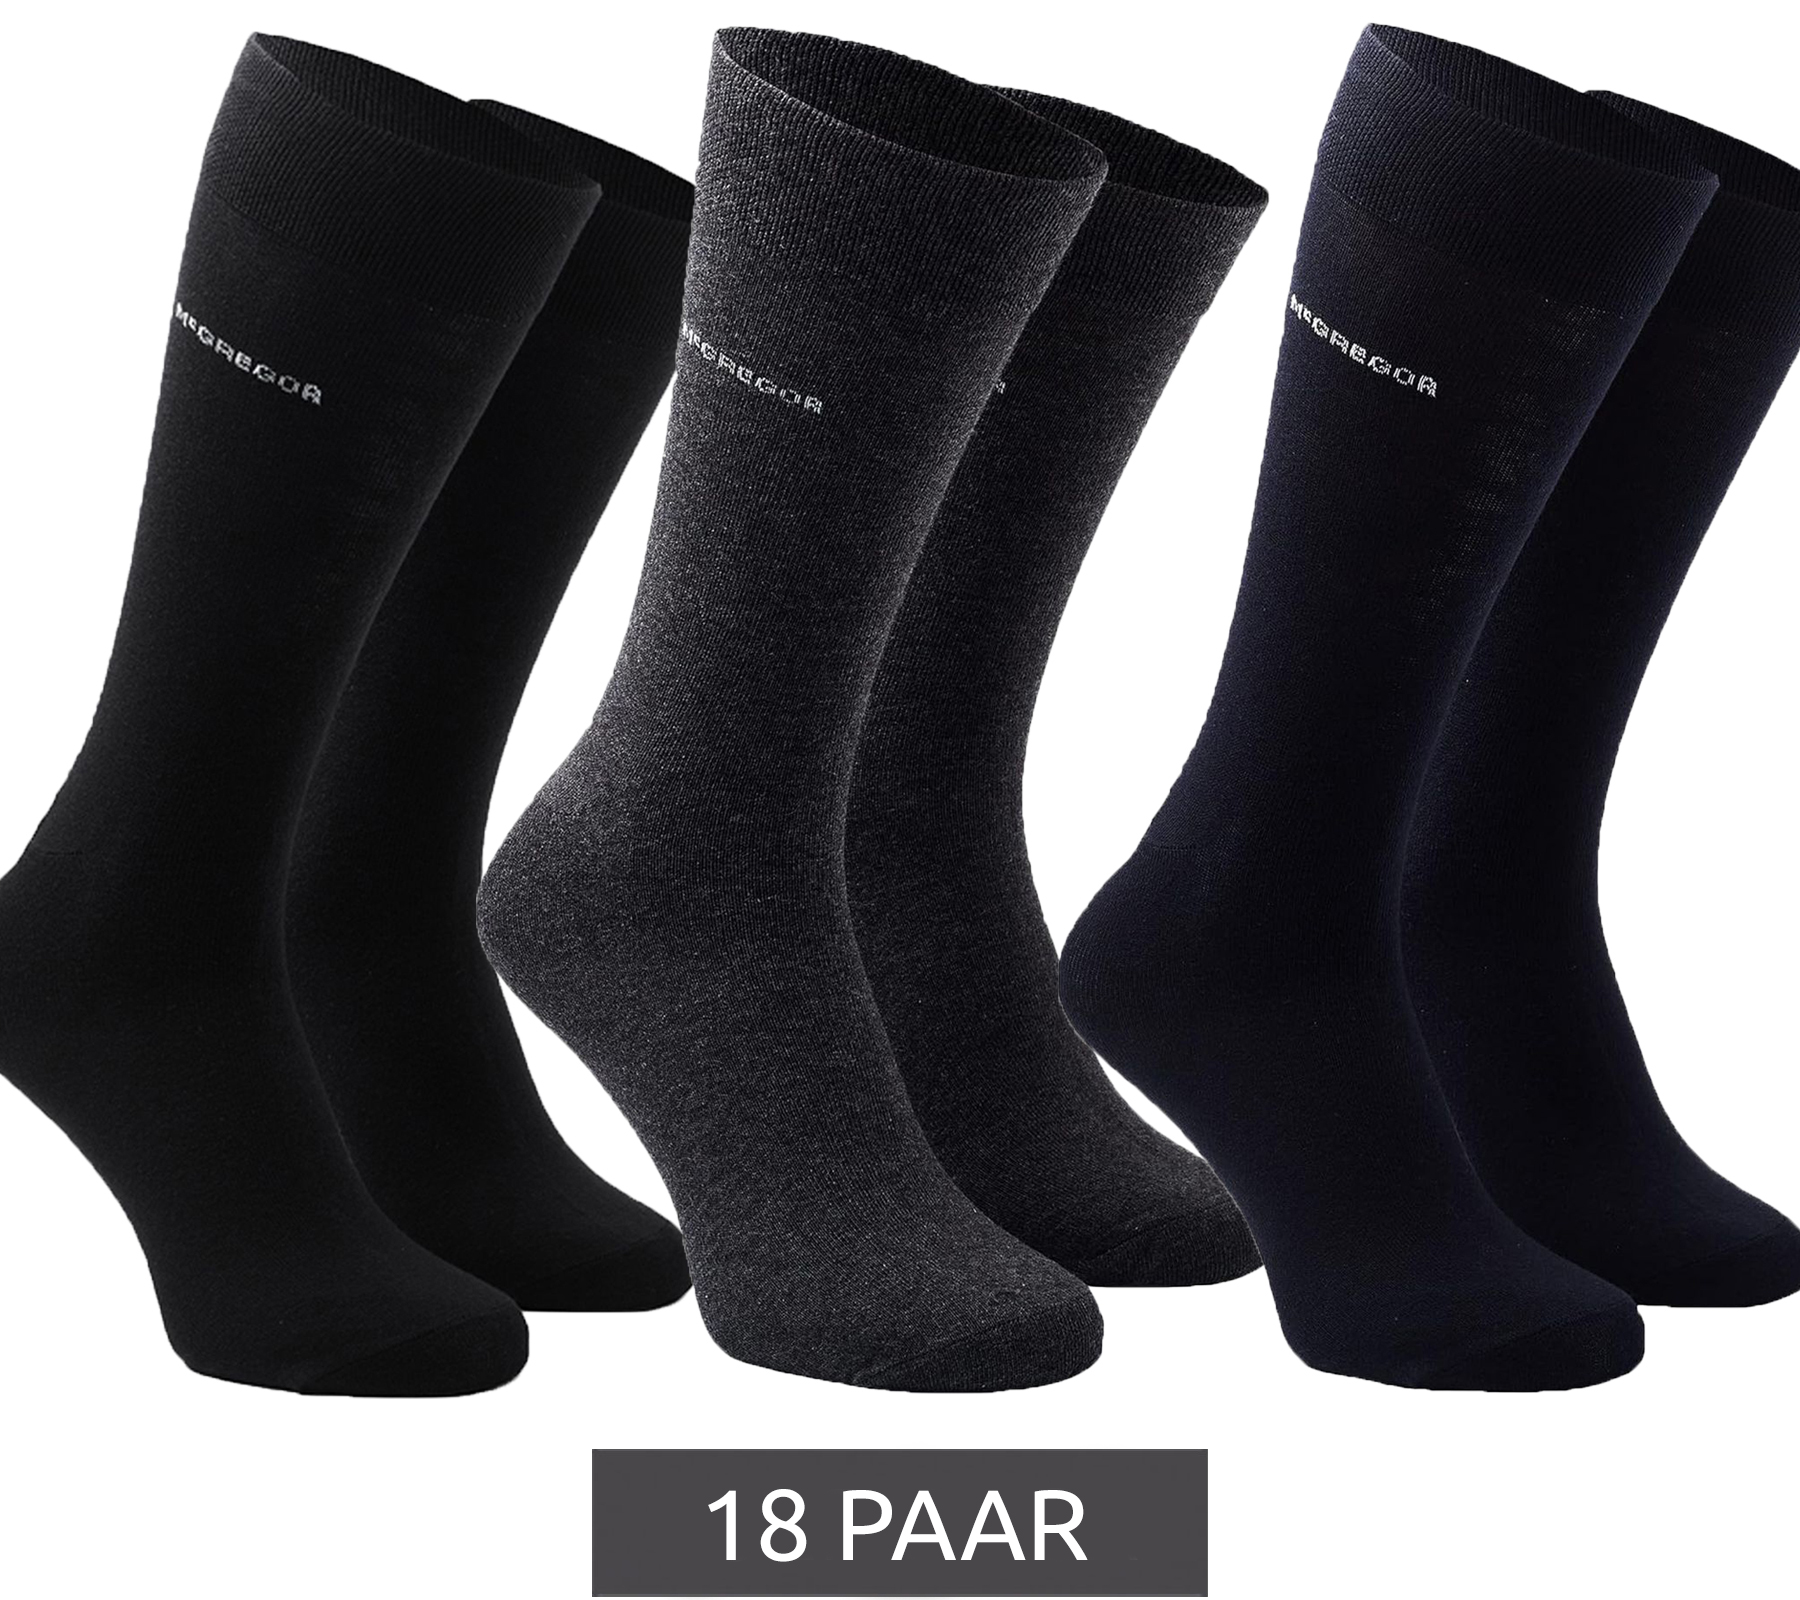 18 Paar McGREGOR Strümpfe Freizeit-Socken Oeko-Tex zertifiziert Business-Socken im Vorteilspack Schwarz Dunkelblau oder Grau